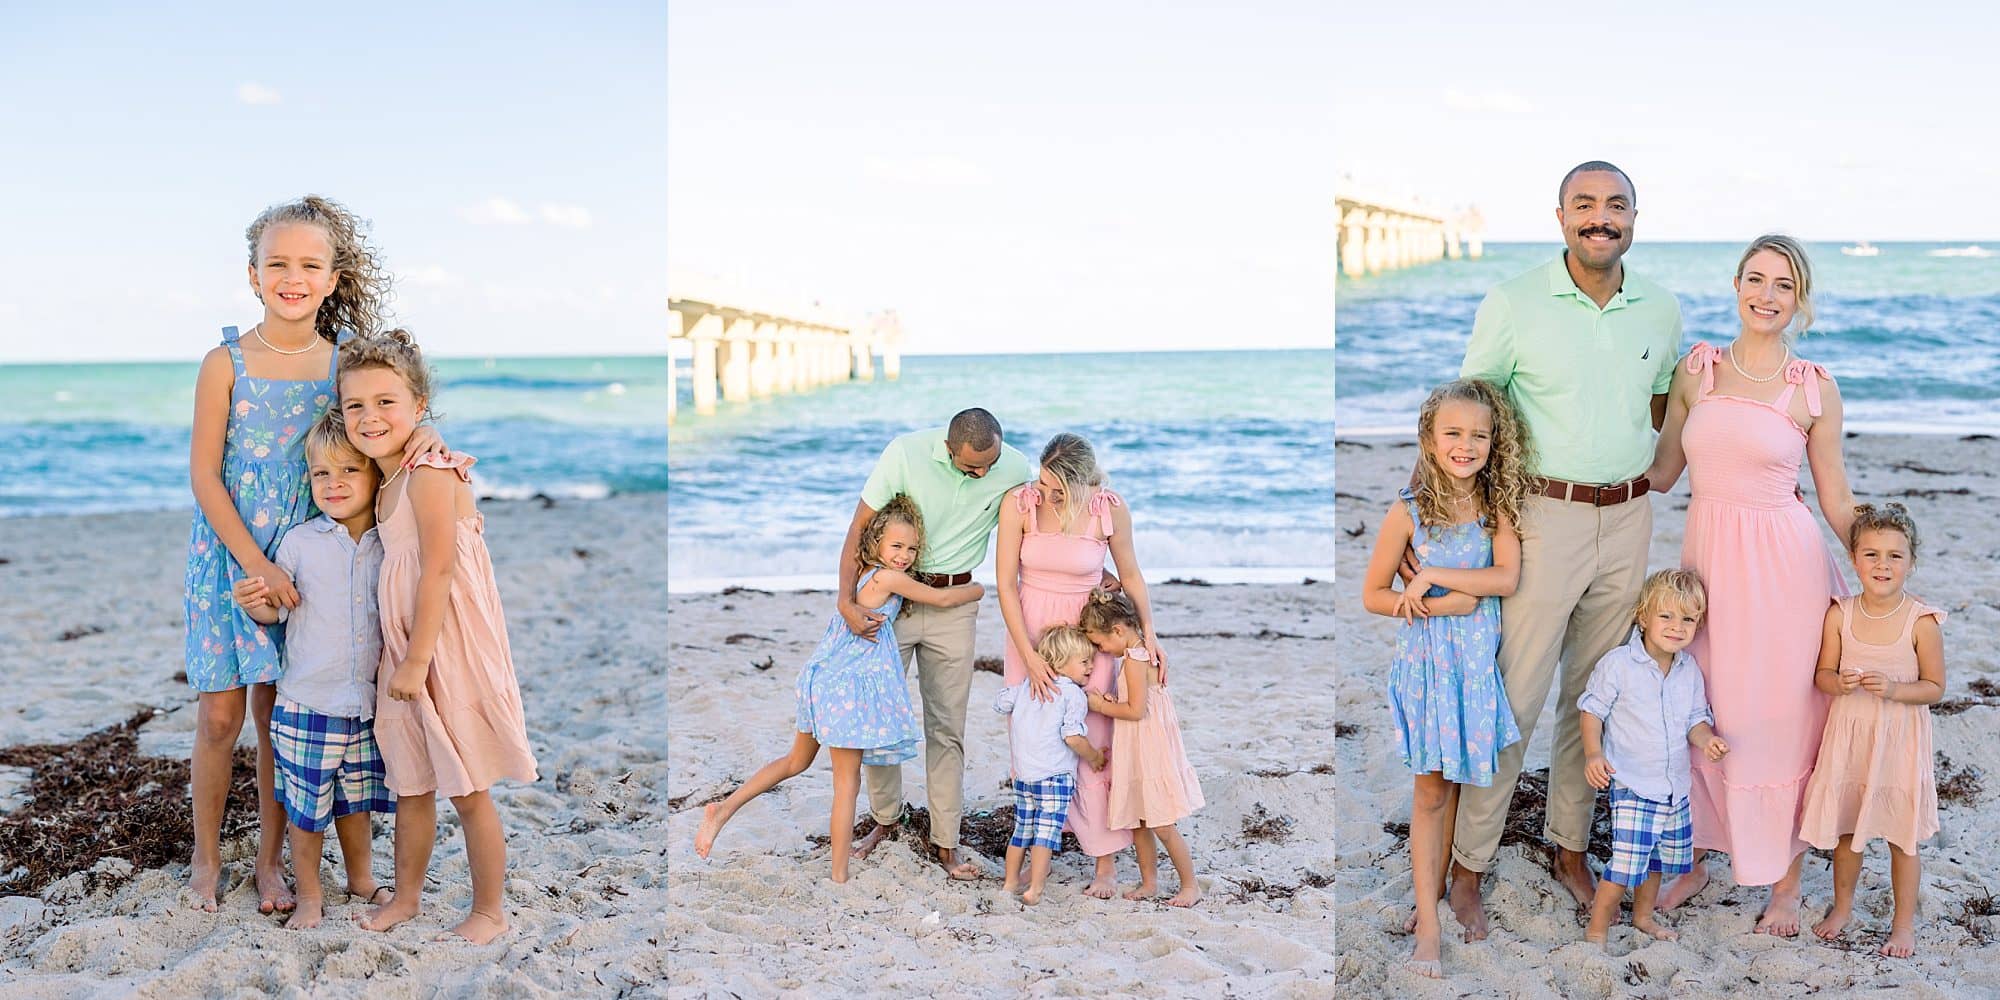 Boca Raton family photos at the beach